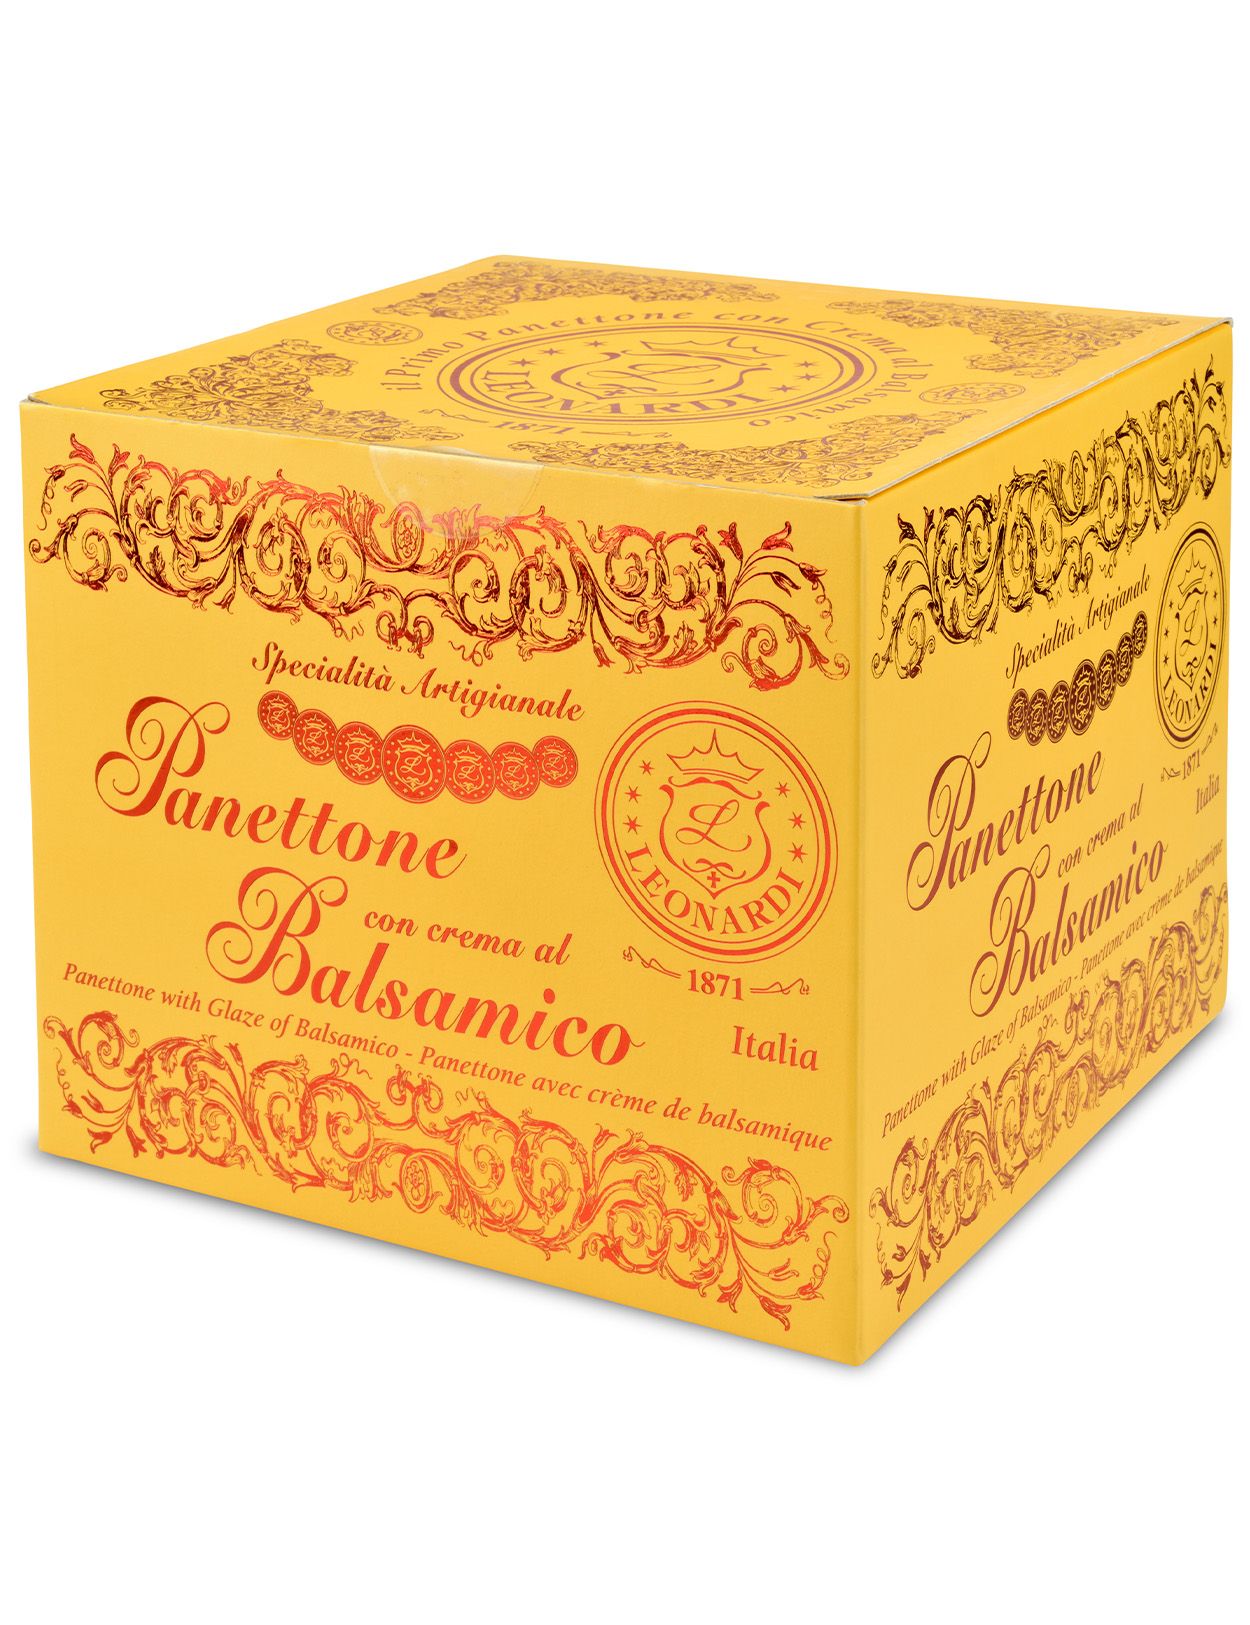 Balsamic Panettone